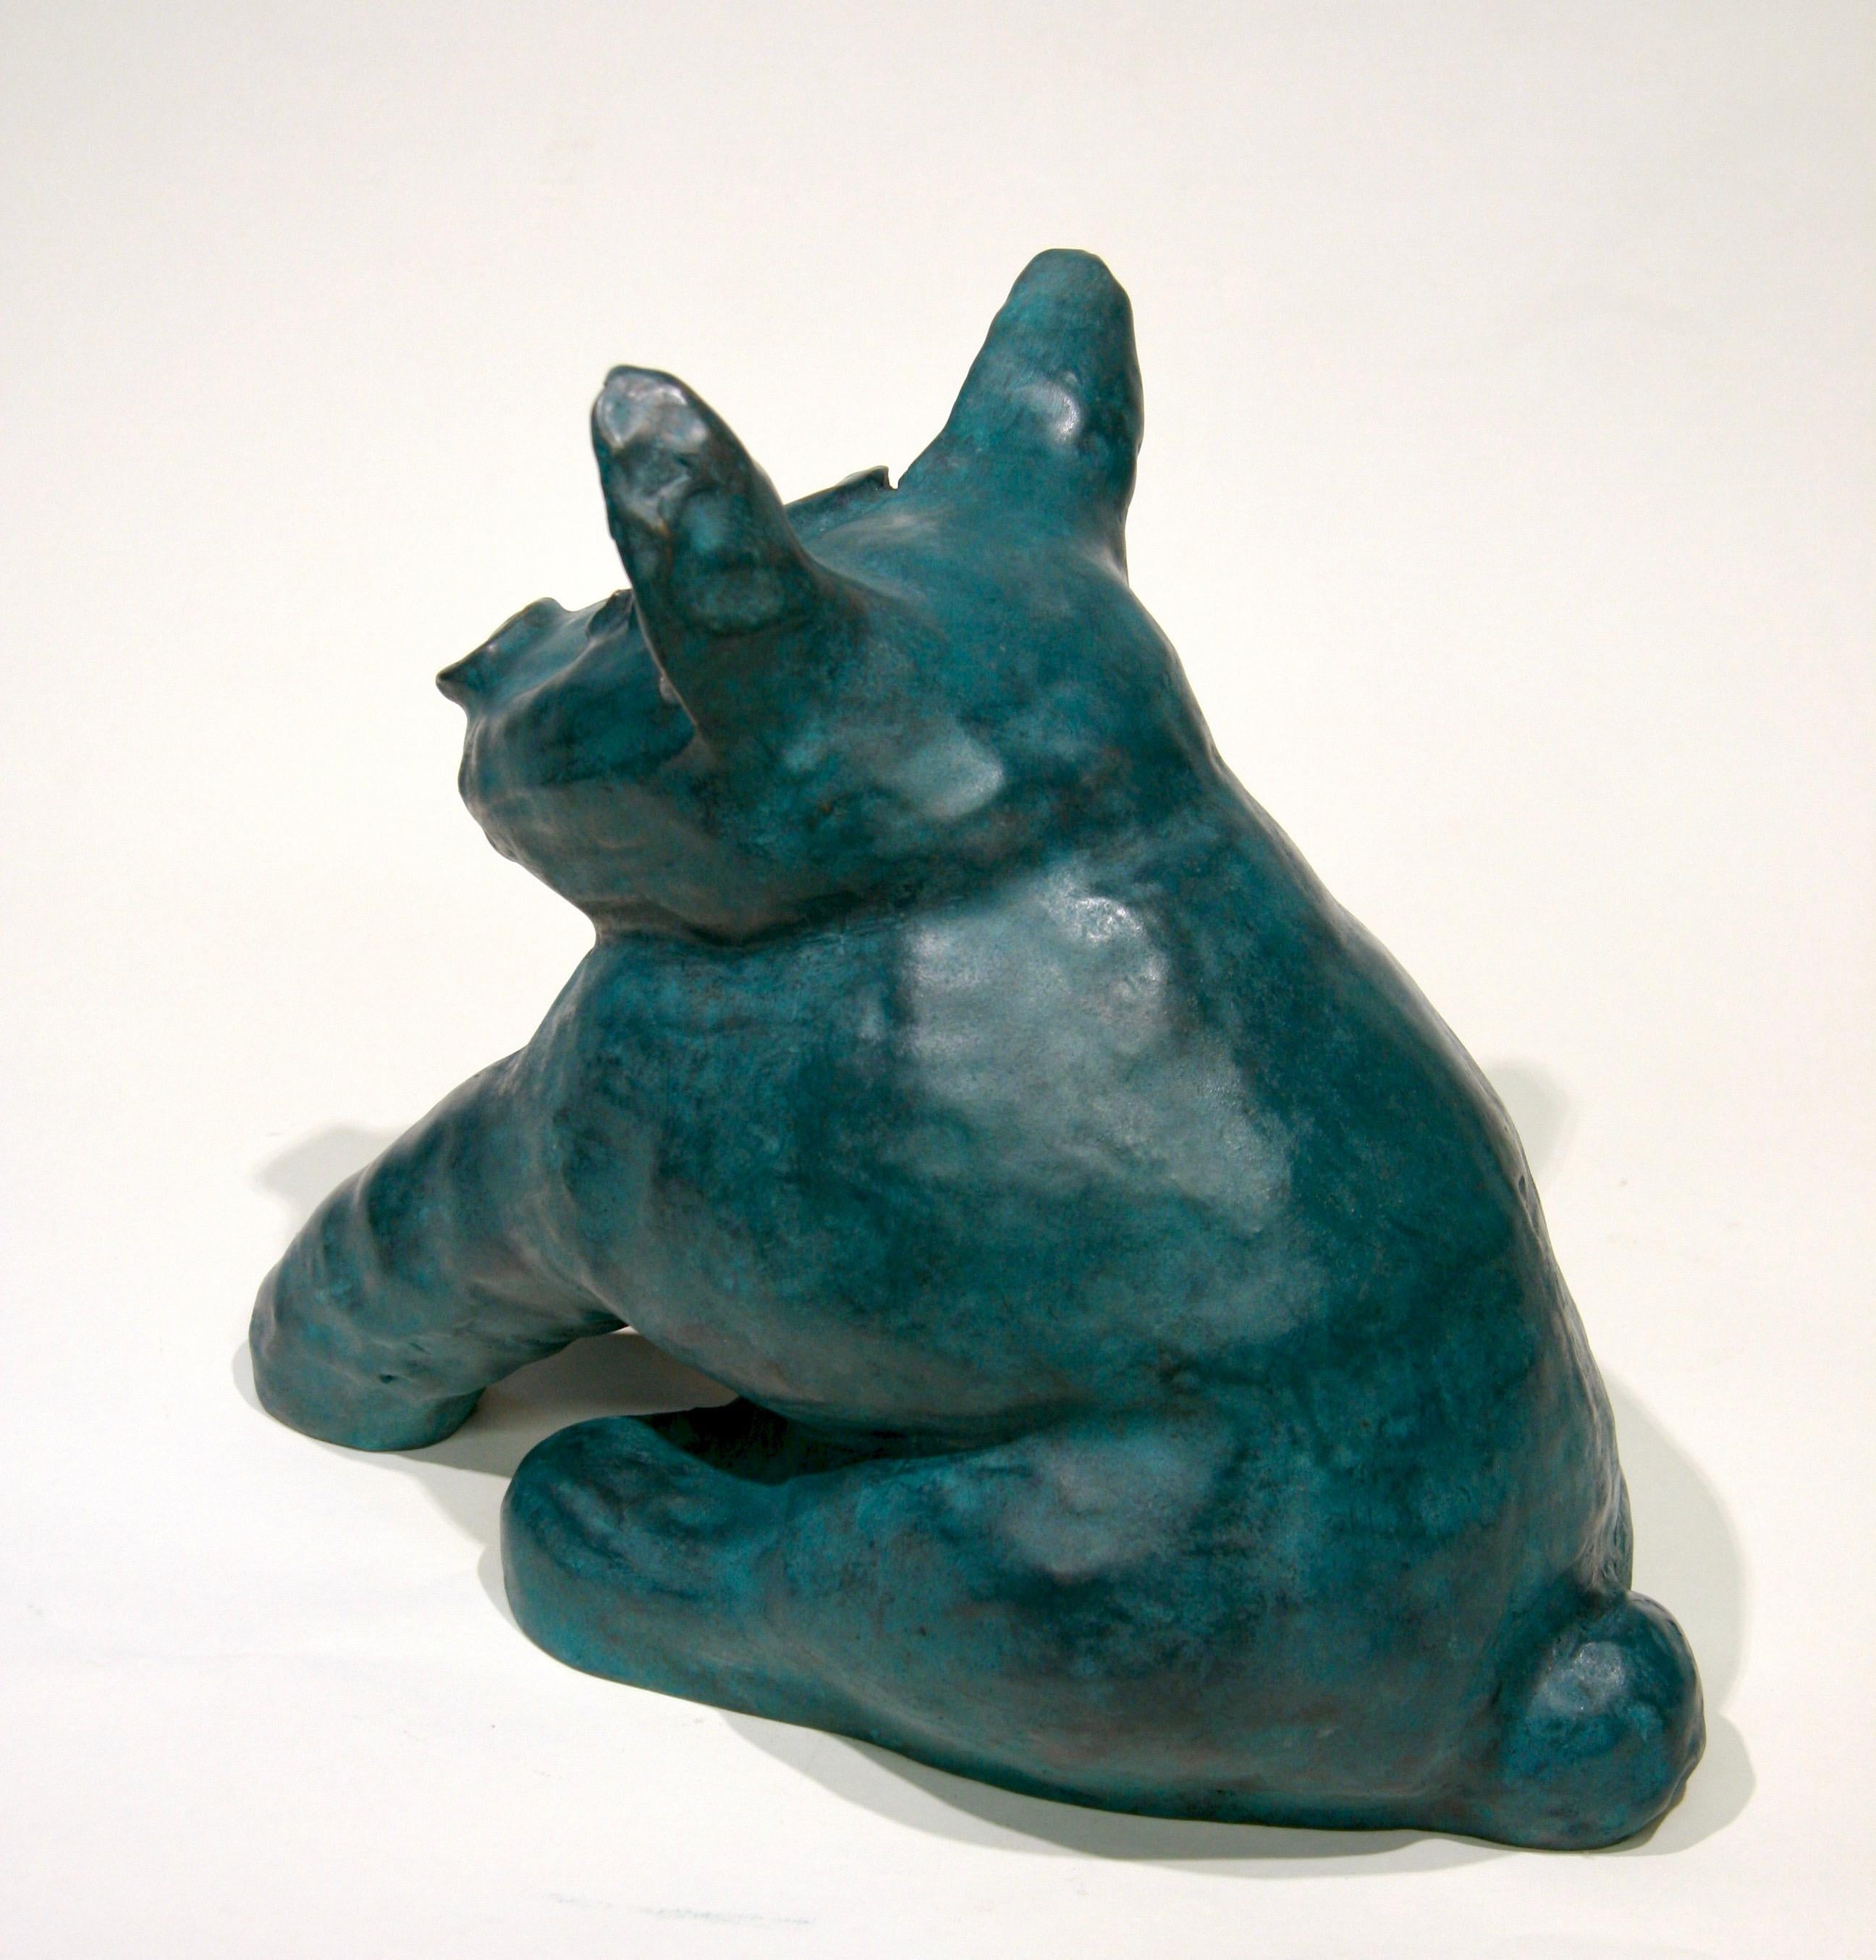 Marvin Tso Likes Green Chile Käseburger, Bronzeskulptur eines Hundes, Teal, sitzend (Gold), Figurative Sculpture, von Melanie Yazzie